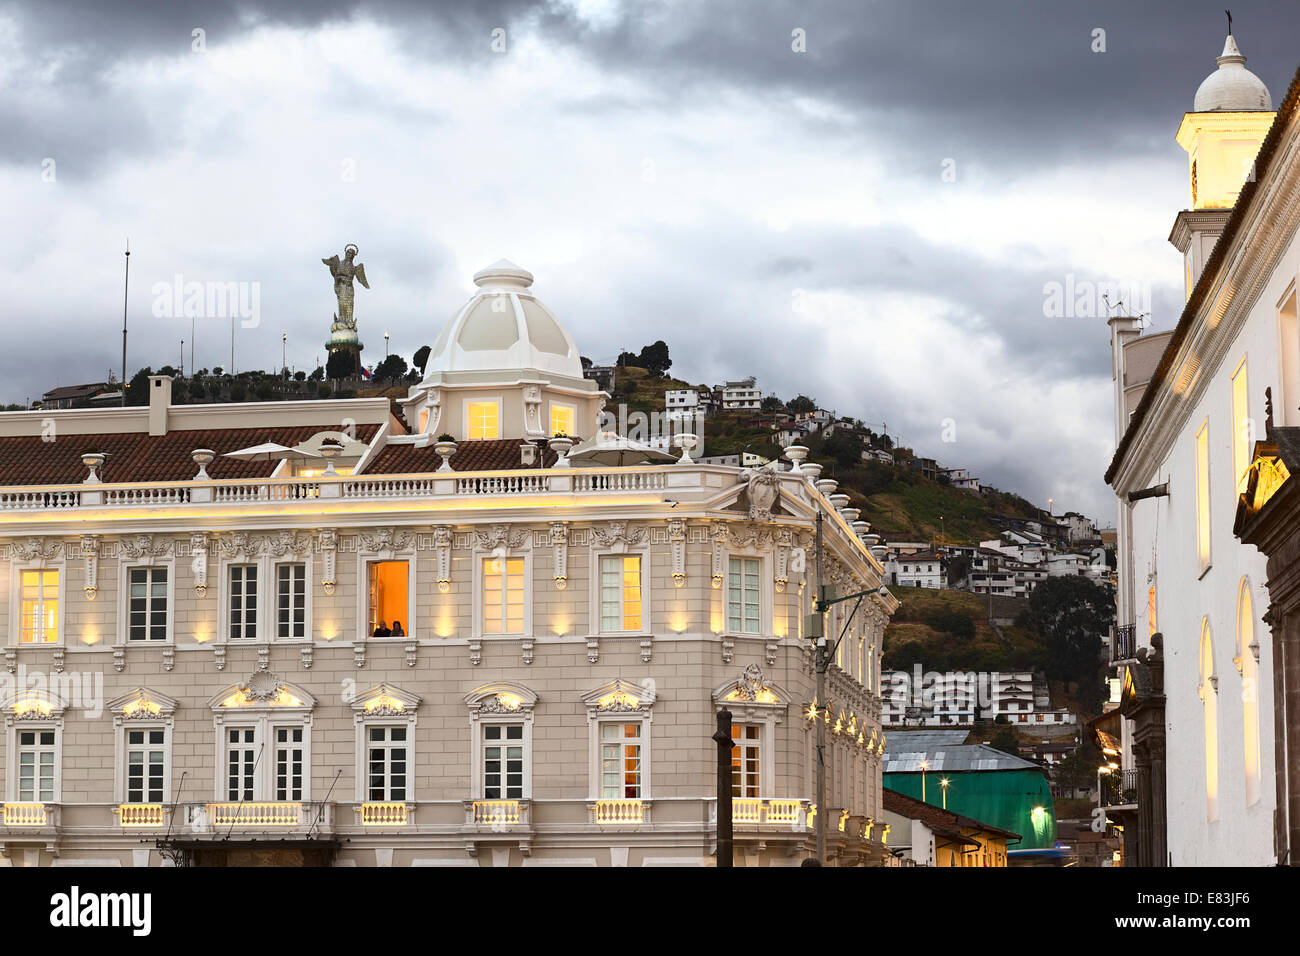 Casa Gangotena hotel at Plaza San Francisco in the city center in Quito, Ecuador Stock Photo